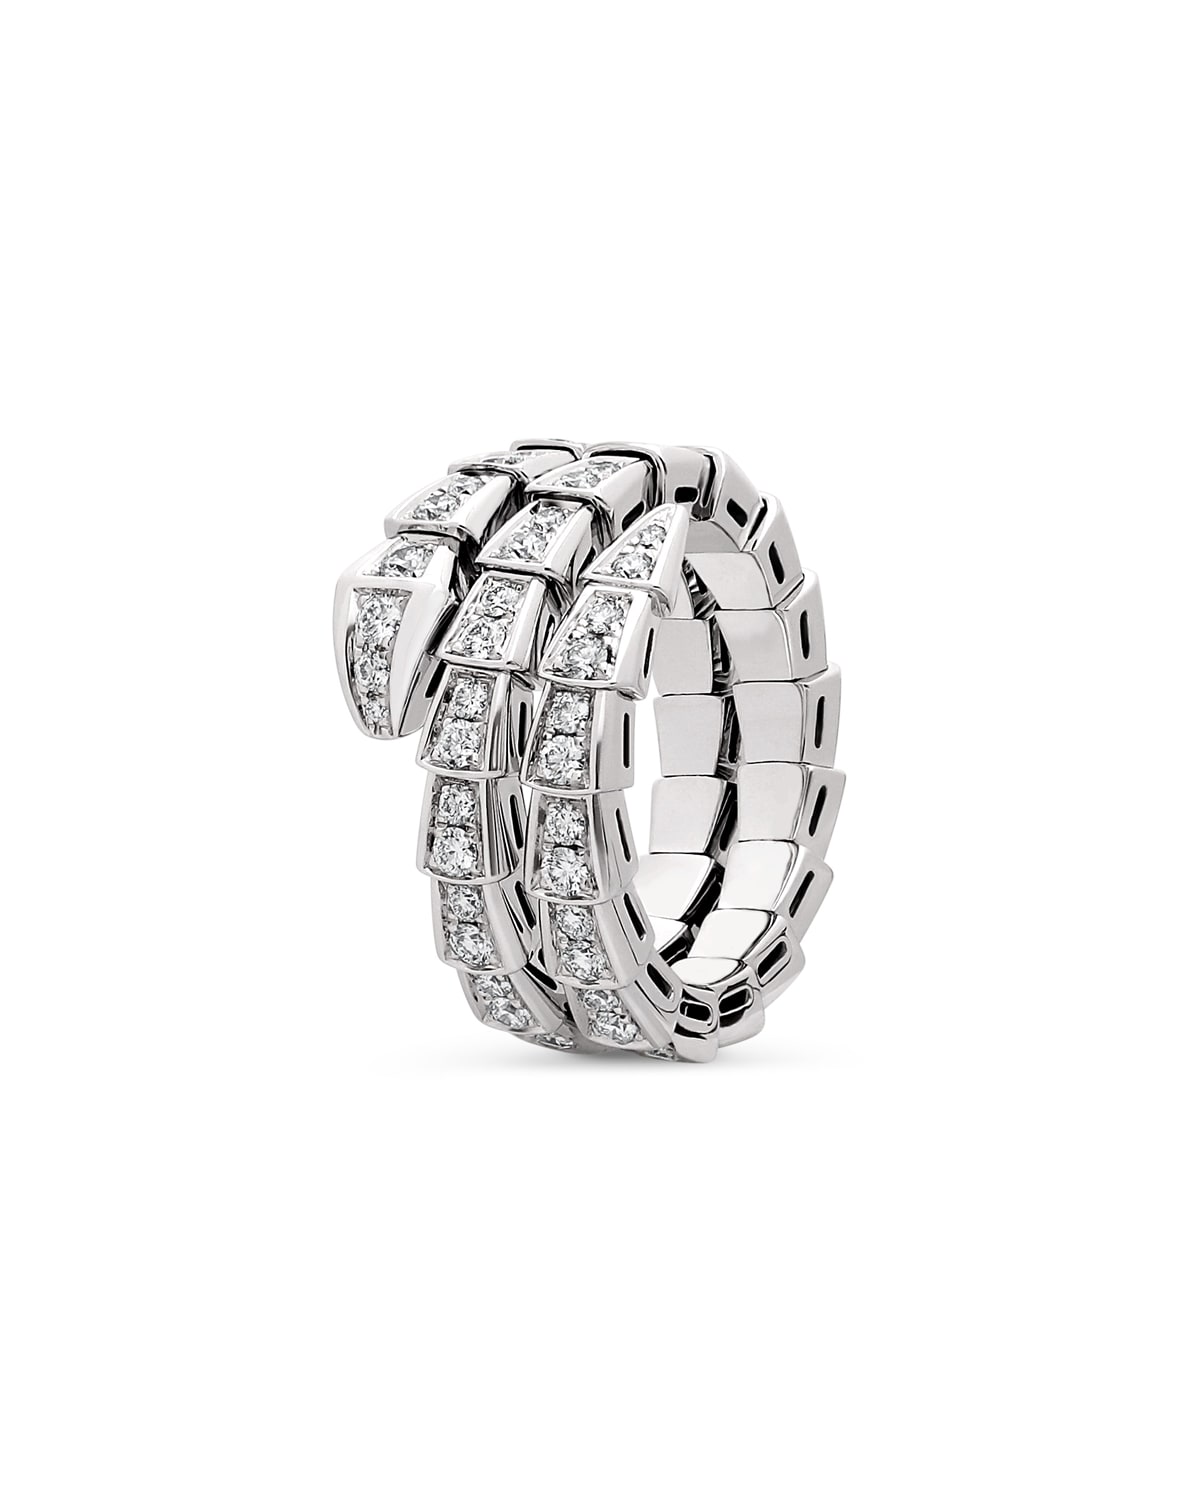 Serpenti Viper 2-Coil Ring in 18k White Gold and Diamonds, Size L